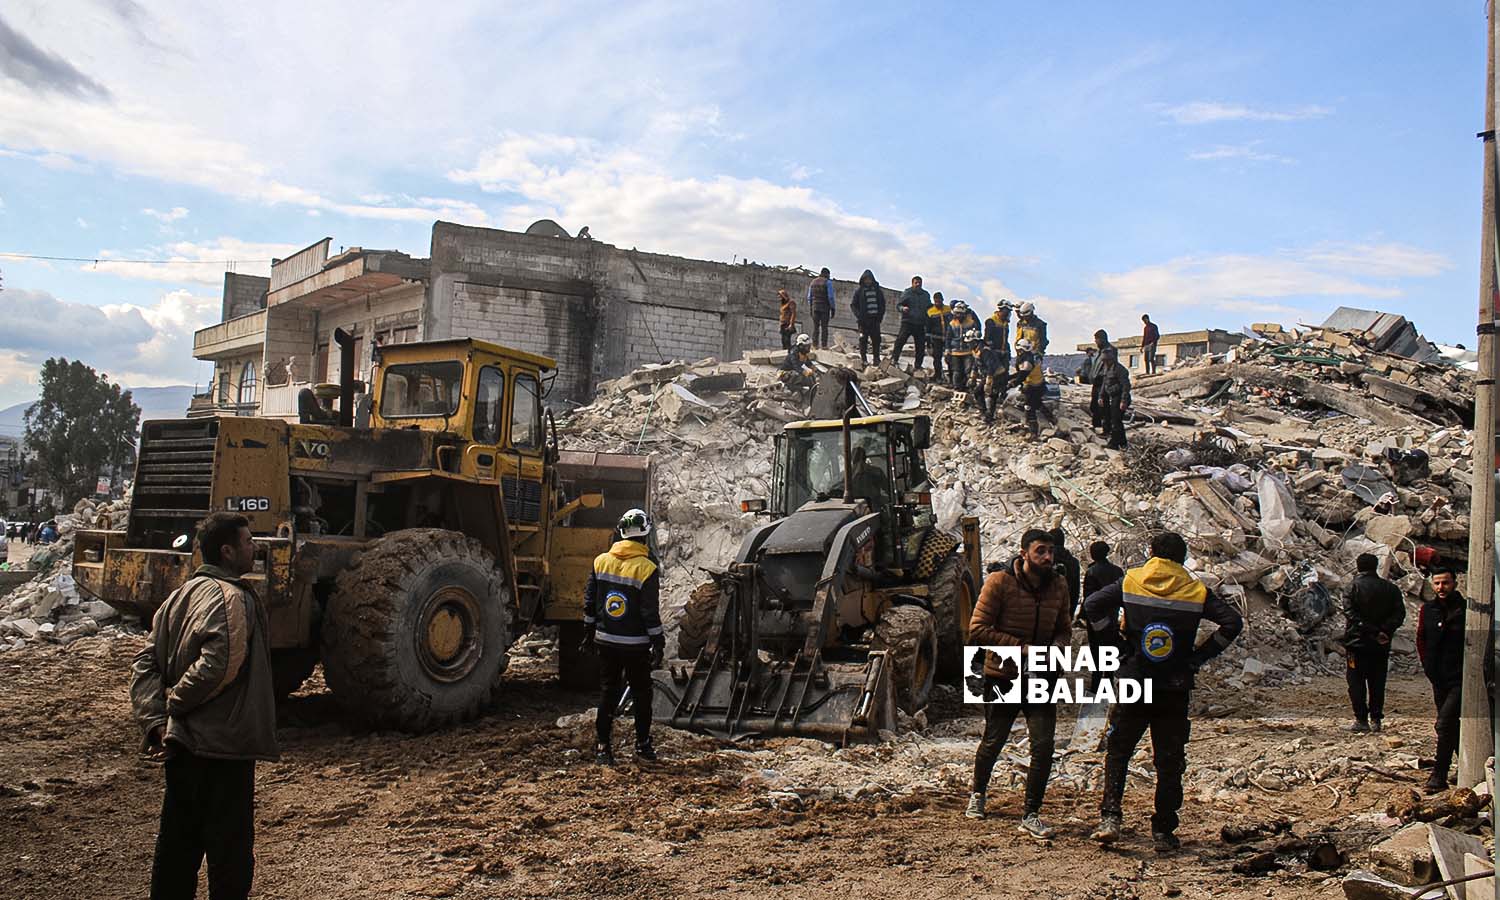 متطوعون من "الدفاع المدني السوري" يحاولون إنقاذ وانتشال الضحايا من تحت الركام في منطقة أرمناز إثر زلزال ضرب مناطق شمال غربي سوريا- 7 شباط 2023 (عنب بلدي/ إياد عبد الجواد)